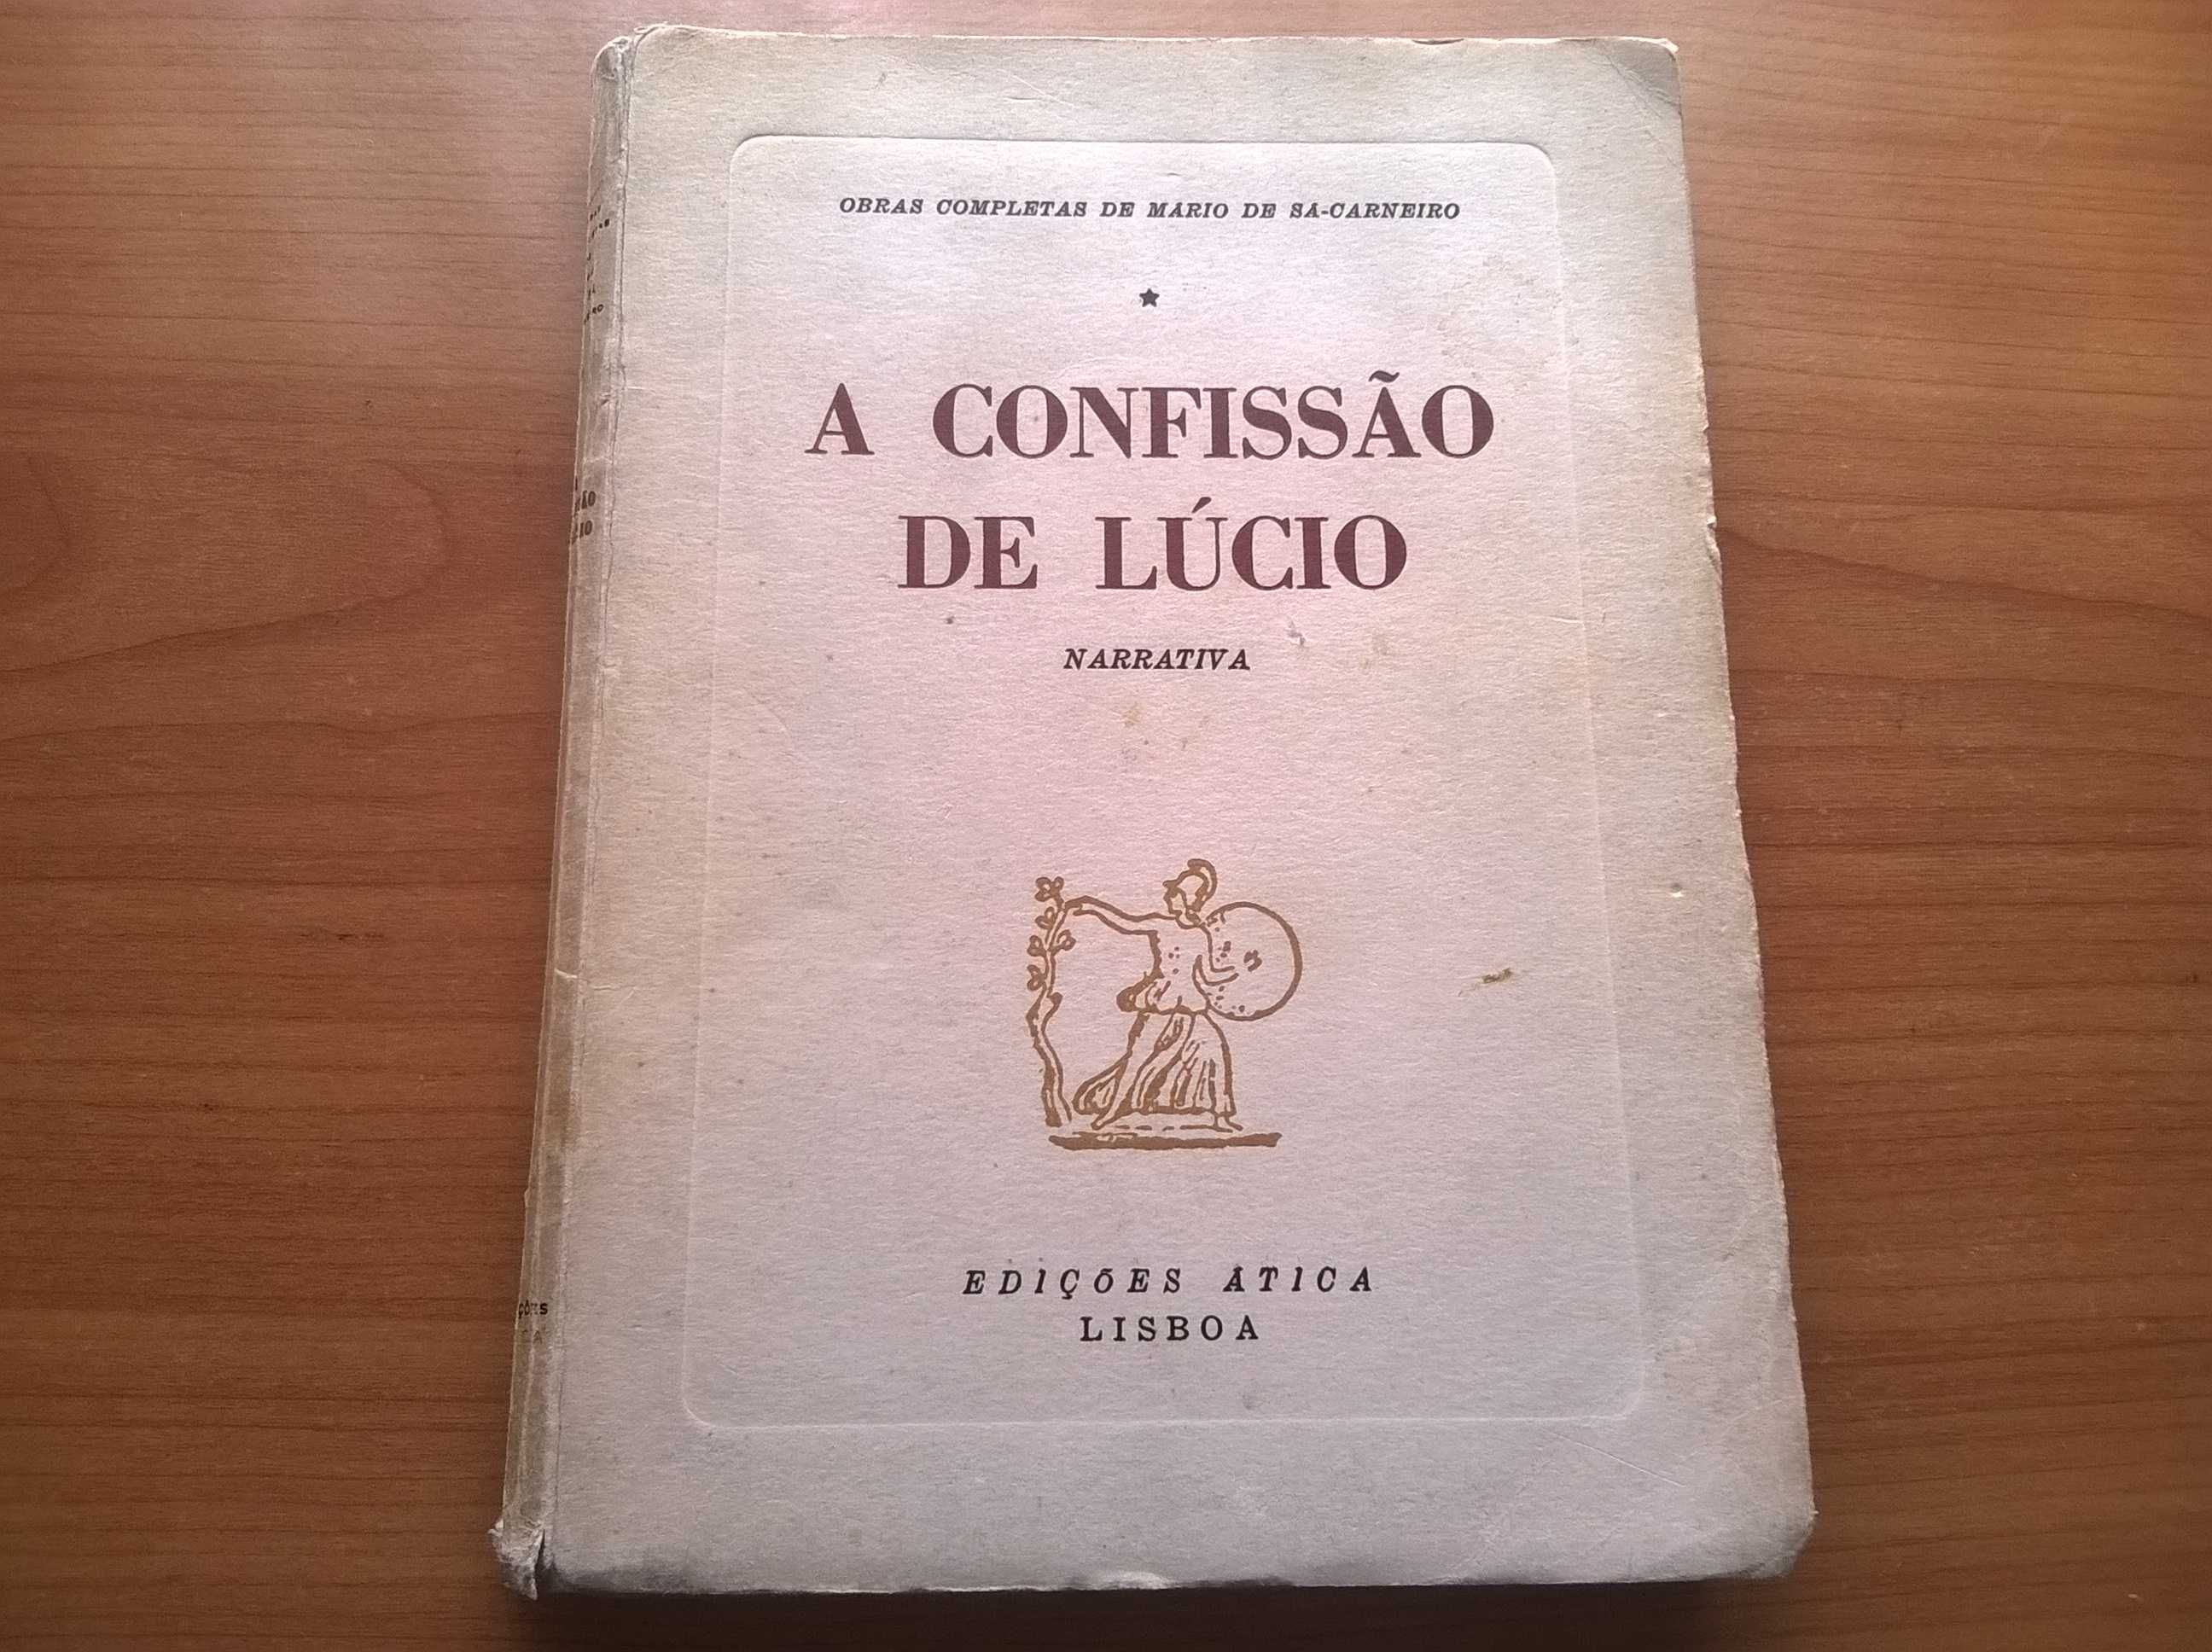 "A Confissão de Lúcio" - Mário de Sá-Carneiro